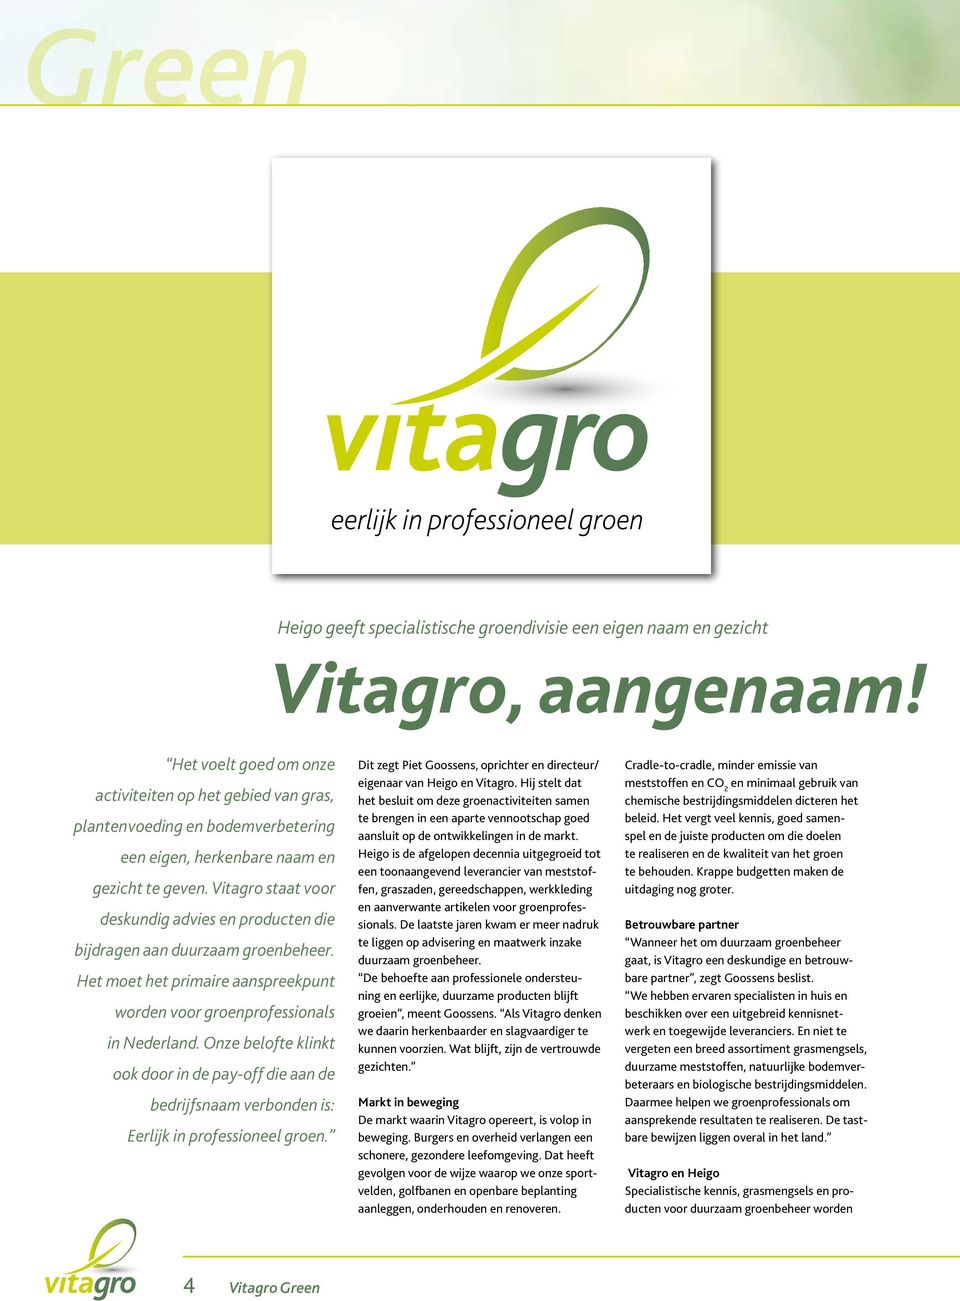 Vitagro staat voor deskundig advies en producten die bijdragen aan duurzaam groenbeheer. Het moet het primaire aanspreekpunt worden voor groenprofessionals in Nederland.